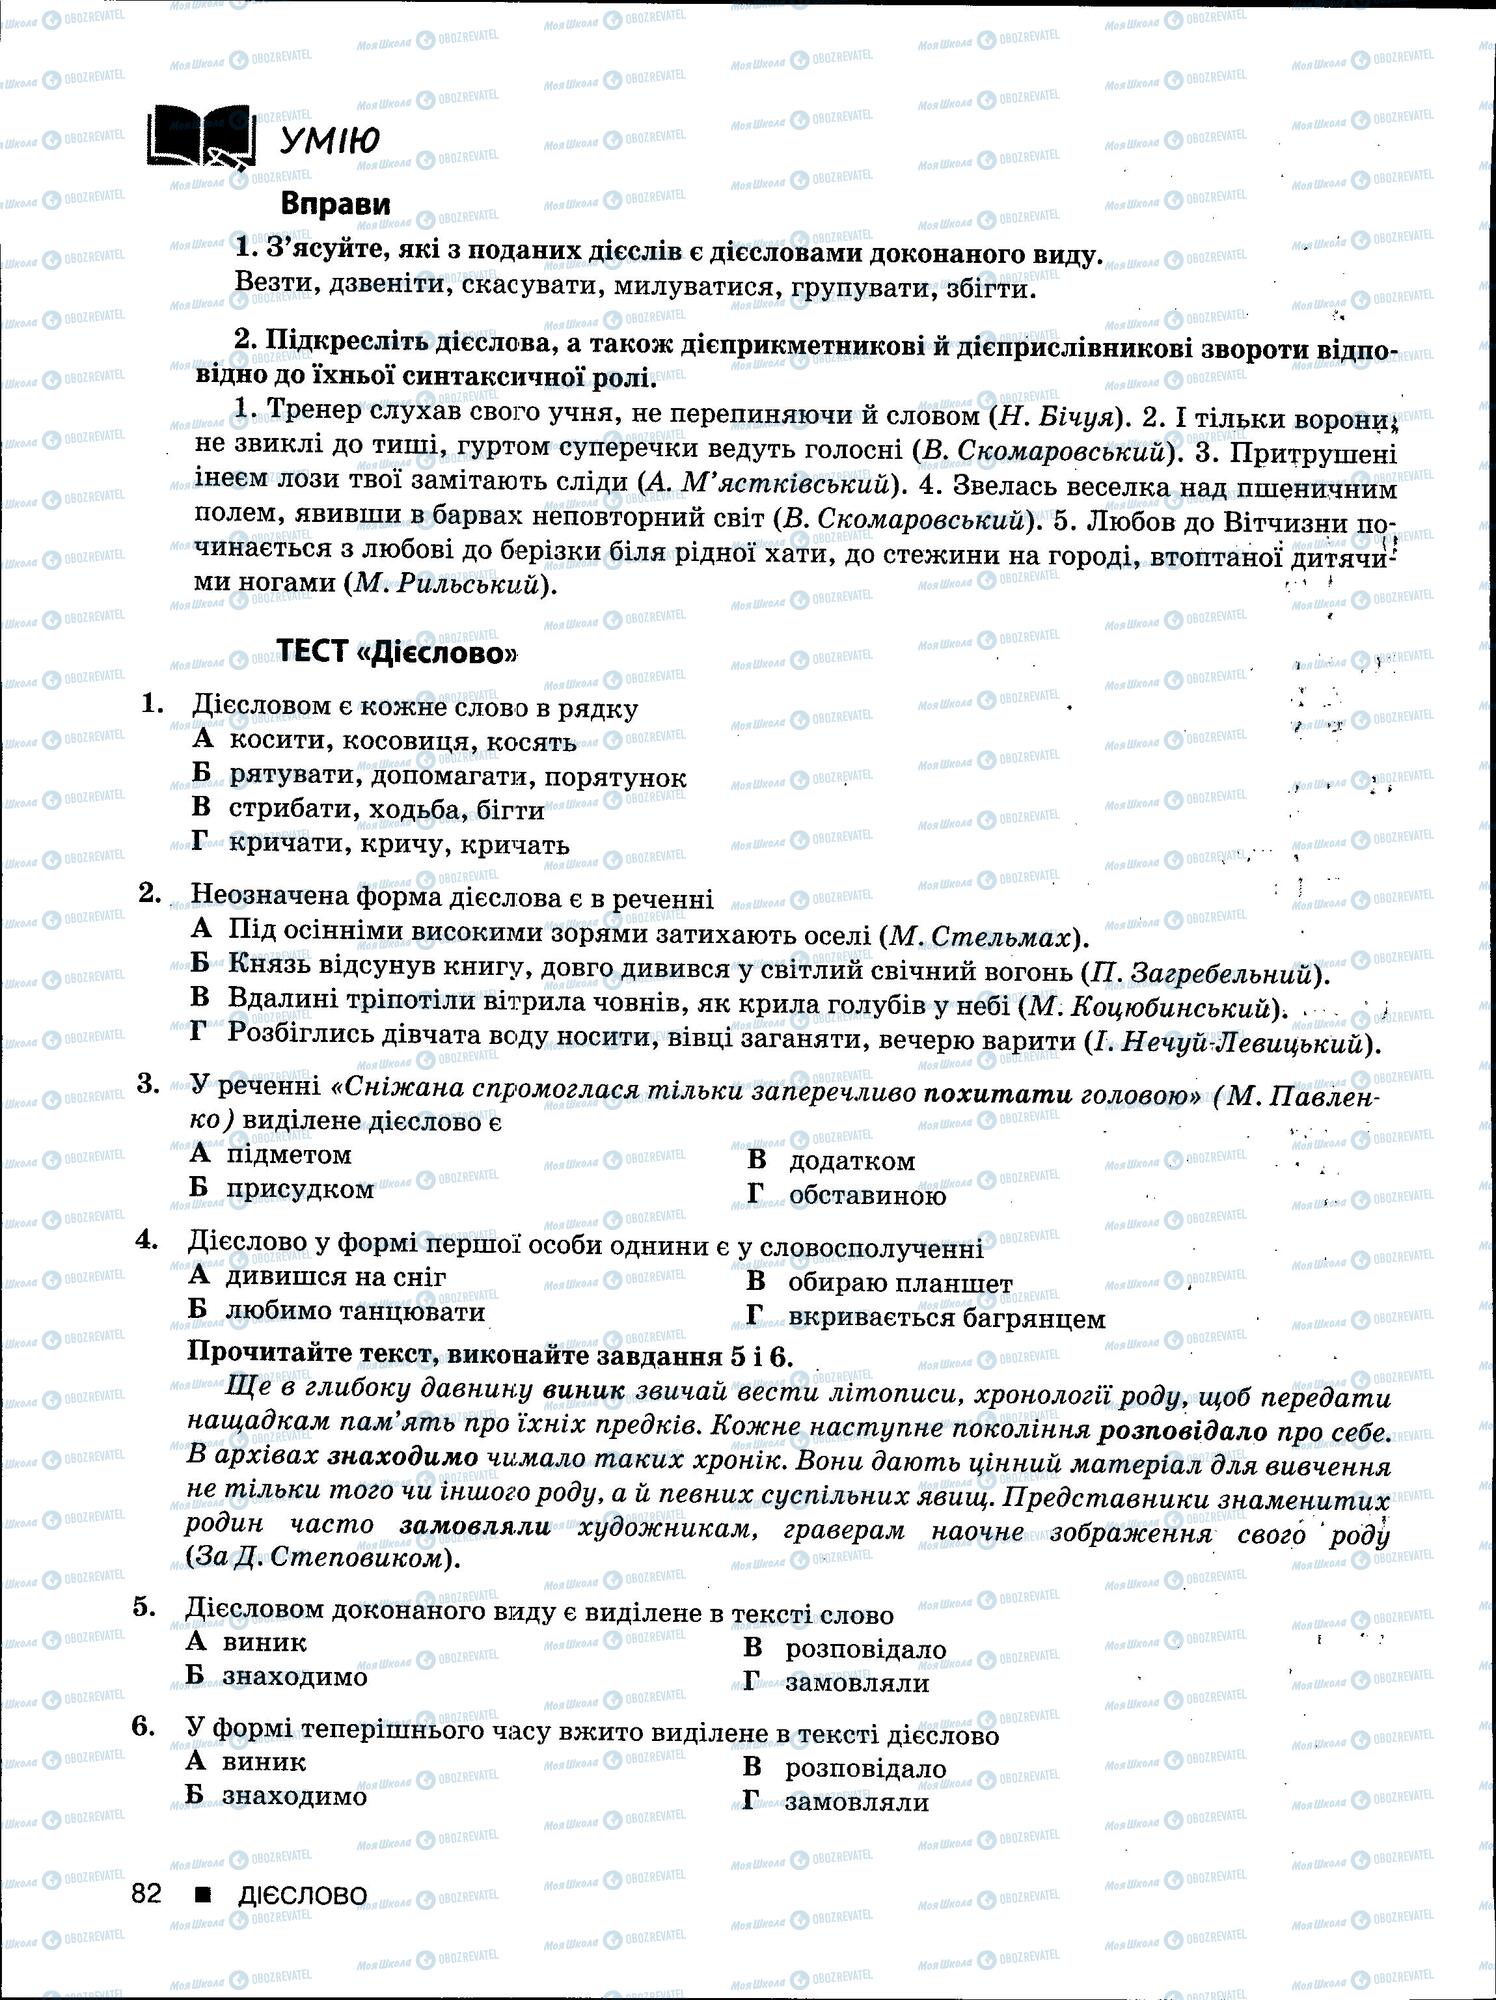 ЗНО Укр мова 11 класс страница 82